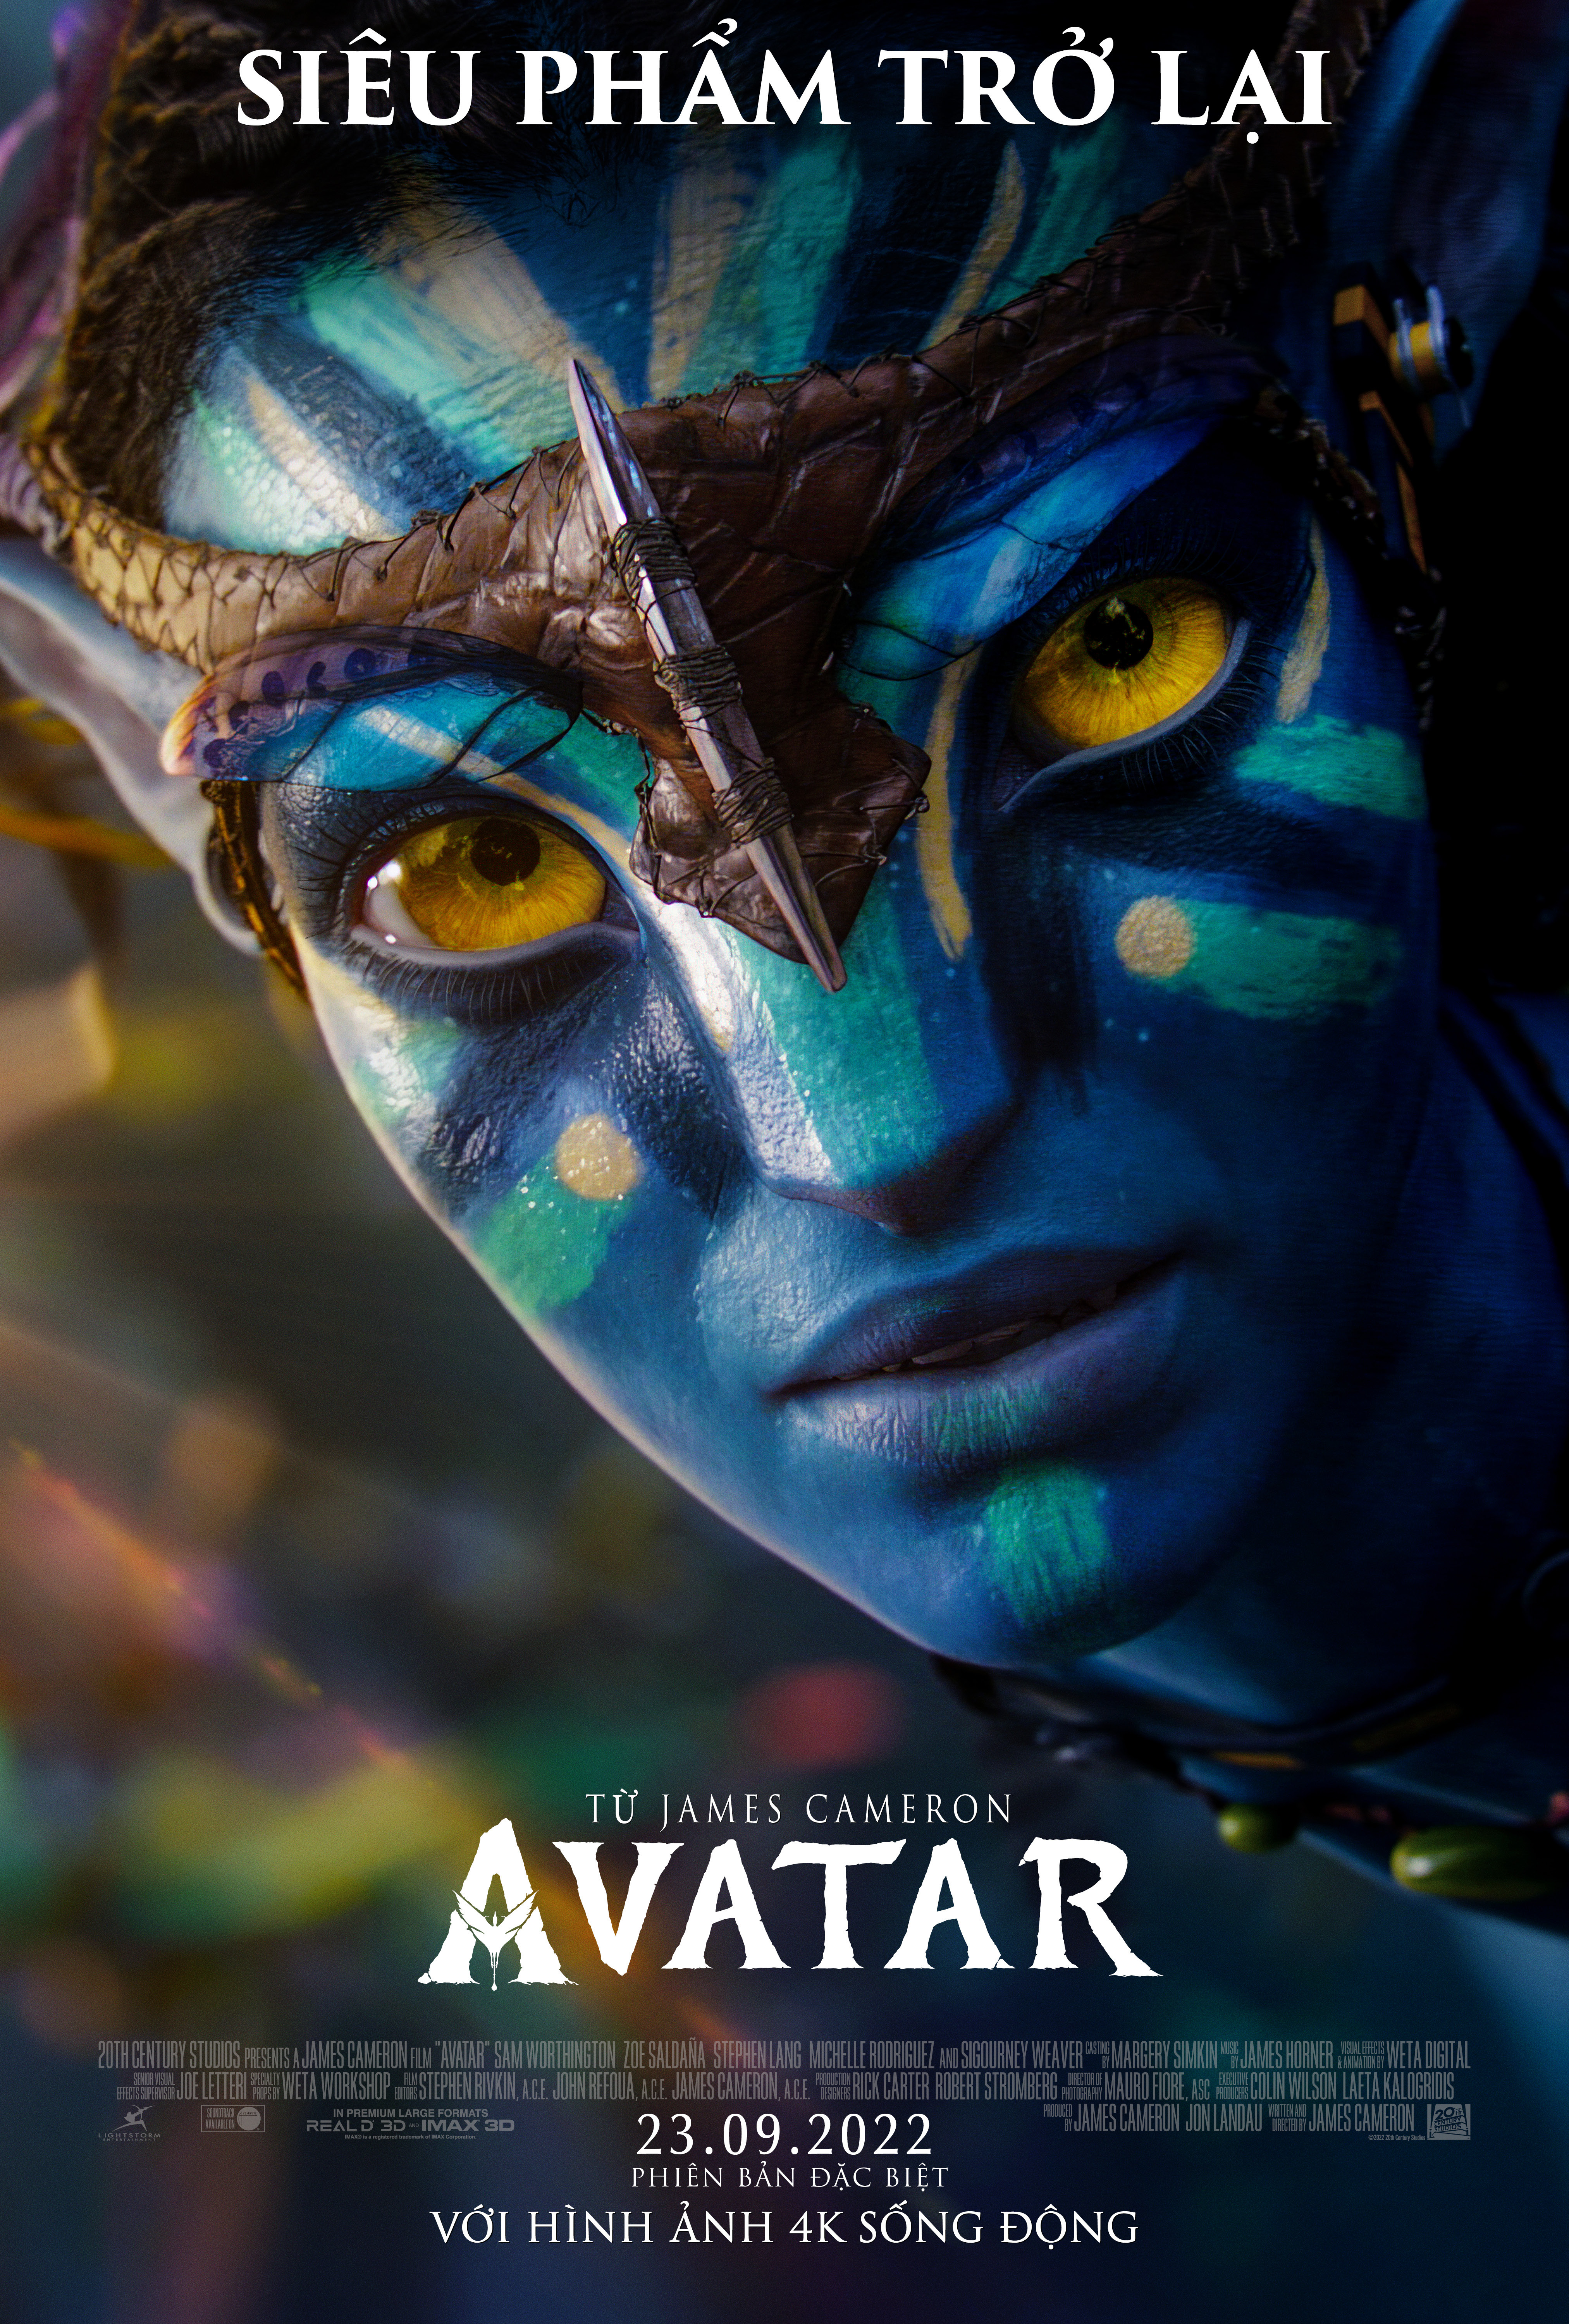 Siêu phẩm Avatar 2 hoãn chiếu đến năm 2017  Tuổi Trẻ Online